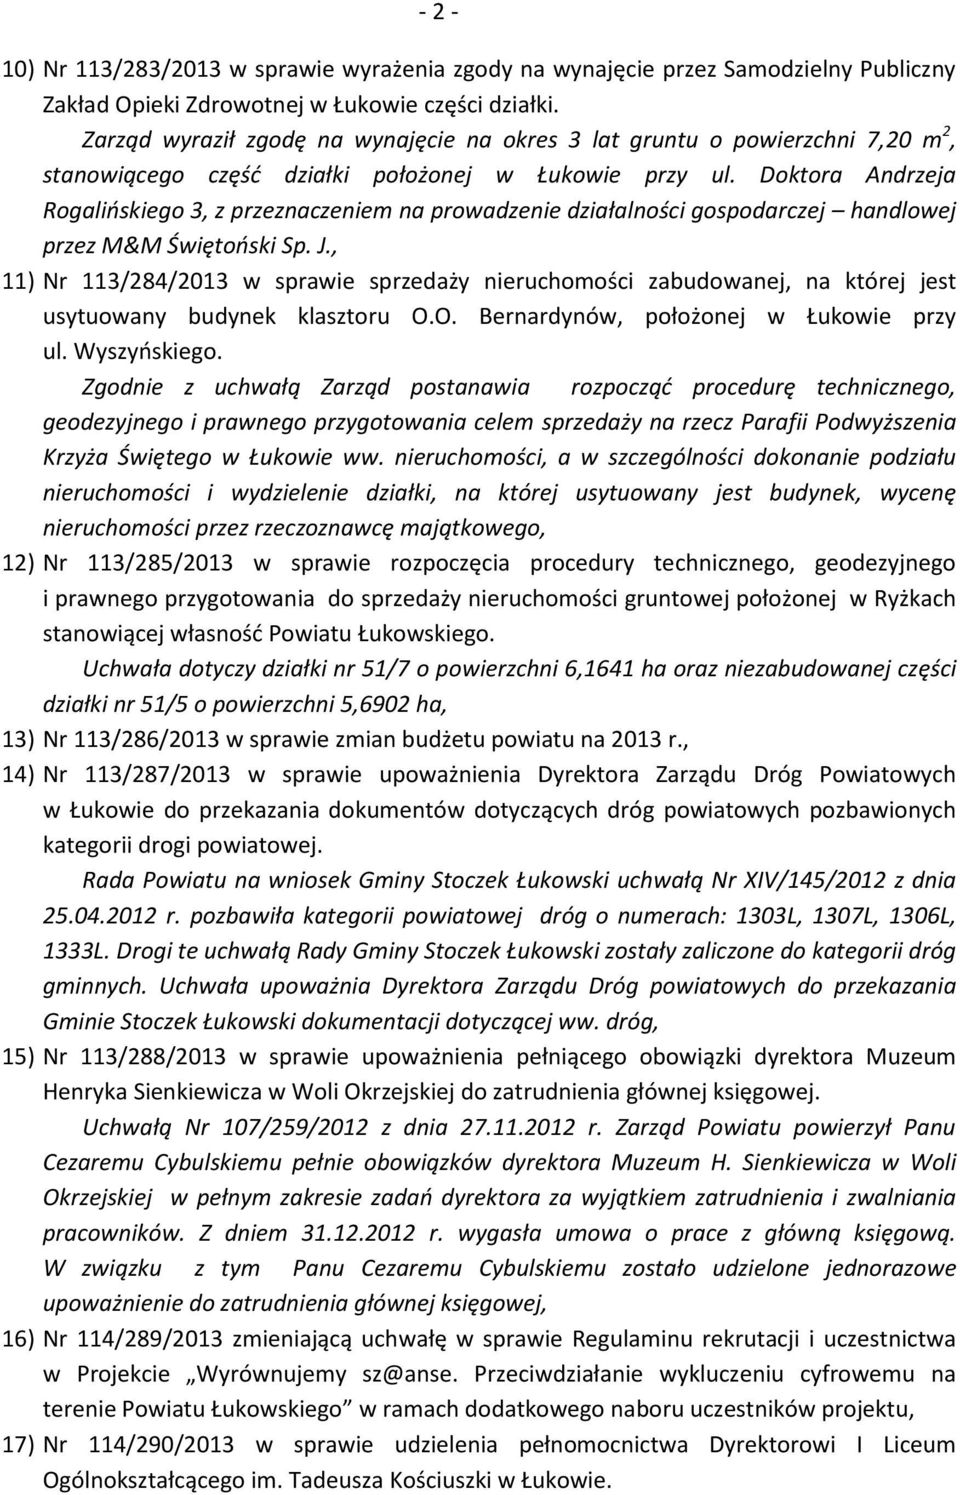 Doktora Andrzeja Rogalińskiego 3, z przeznaczeniem na prowadzenie działalności gospodarczej handlowej przez M&M Świętoński Sp. J.